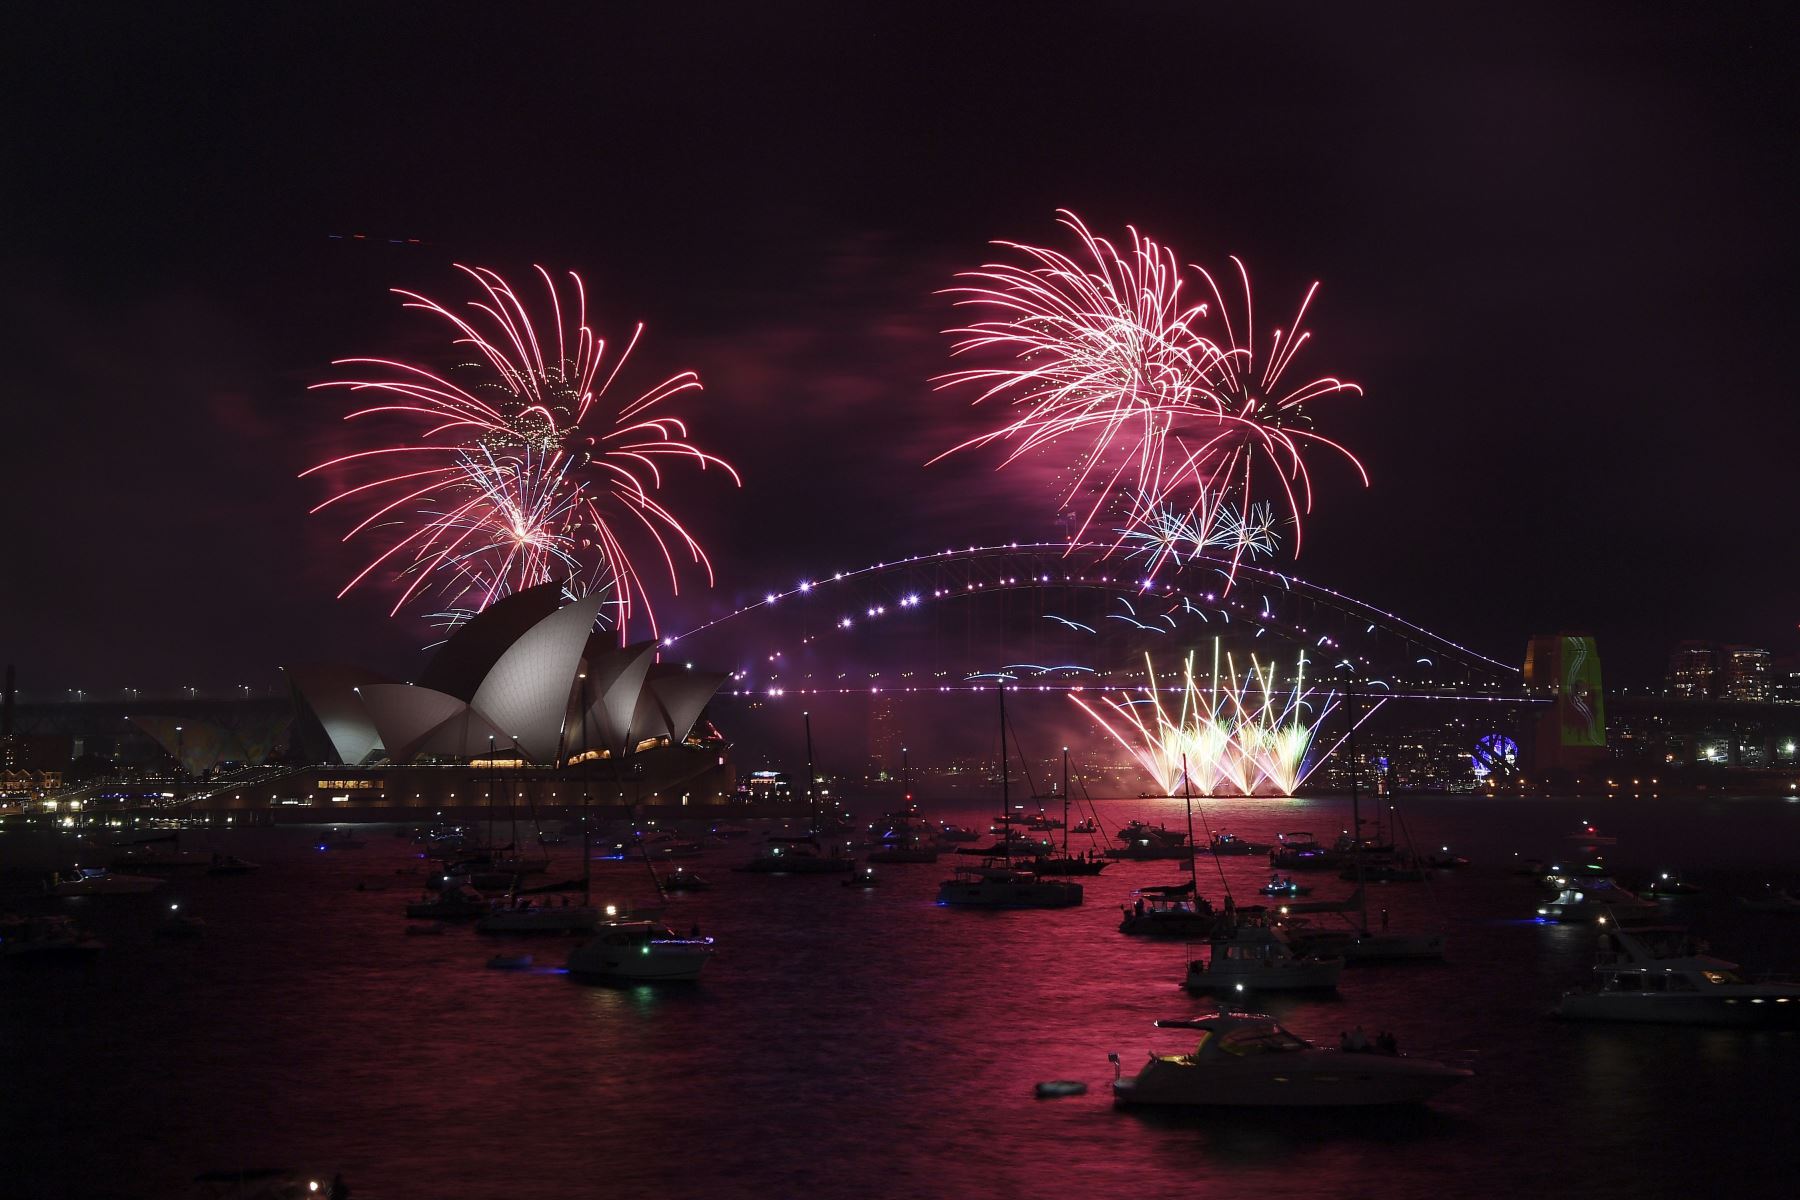 Castillo de fuegos artificiales sobre la Ópera House de Sídney, Australia, como parte de las celebraciones del fin de año. Foto: Efe.